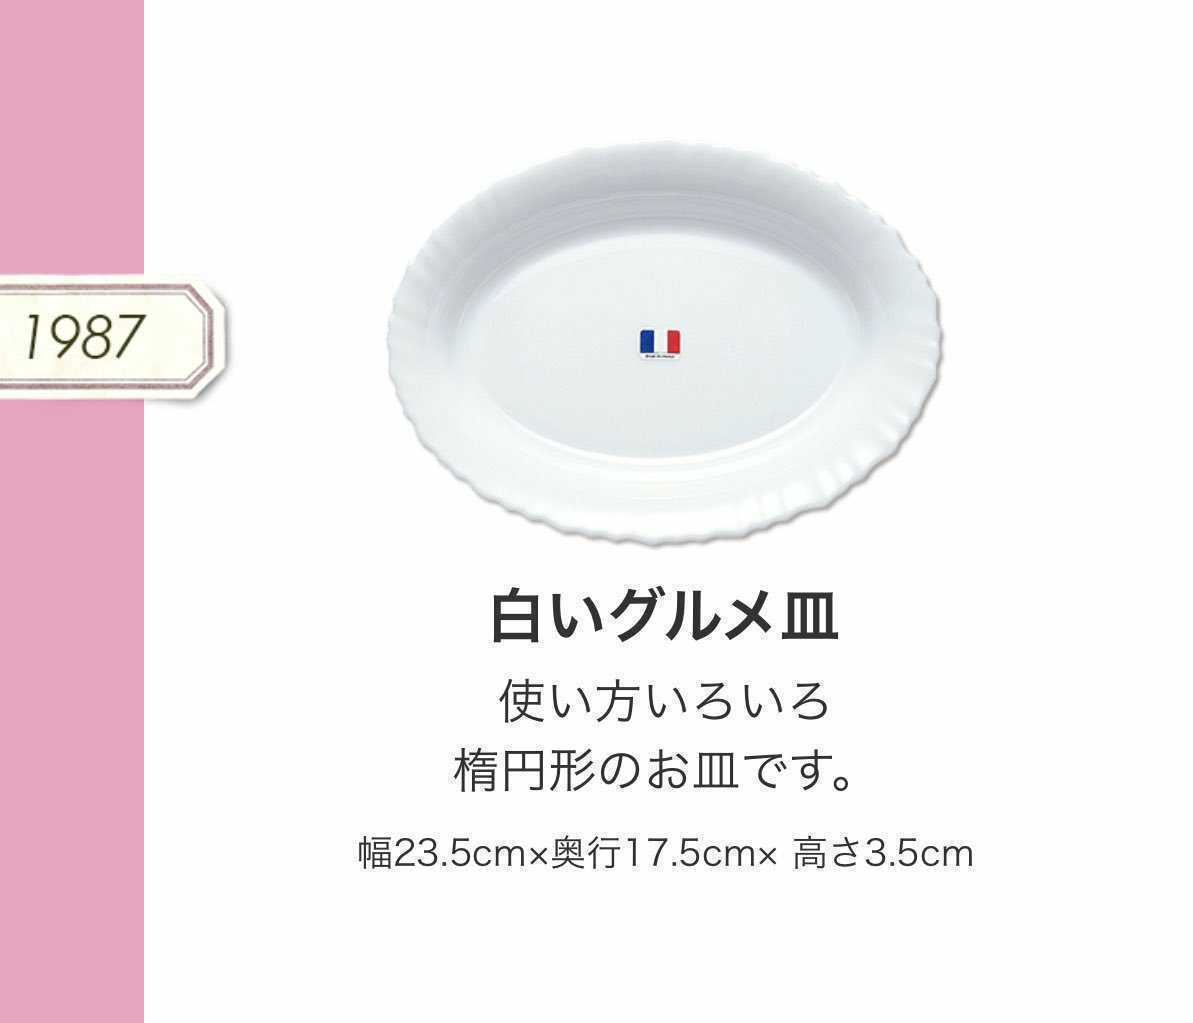 【送料無料】ヤマザキ春のパン祭り山崎春のパンまつり1987年白いグルメ皿2枚セット グラタン皿 カレー皿 パスタ皿 アルコパルの画像2